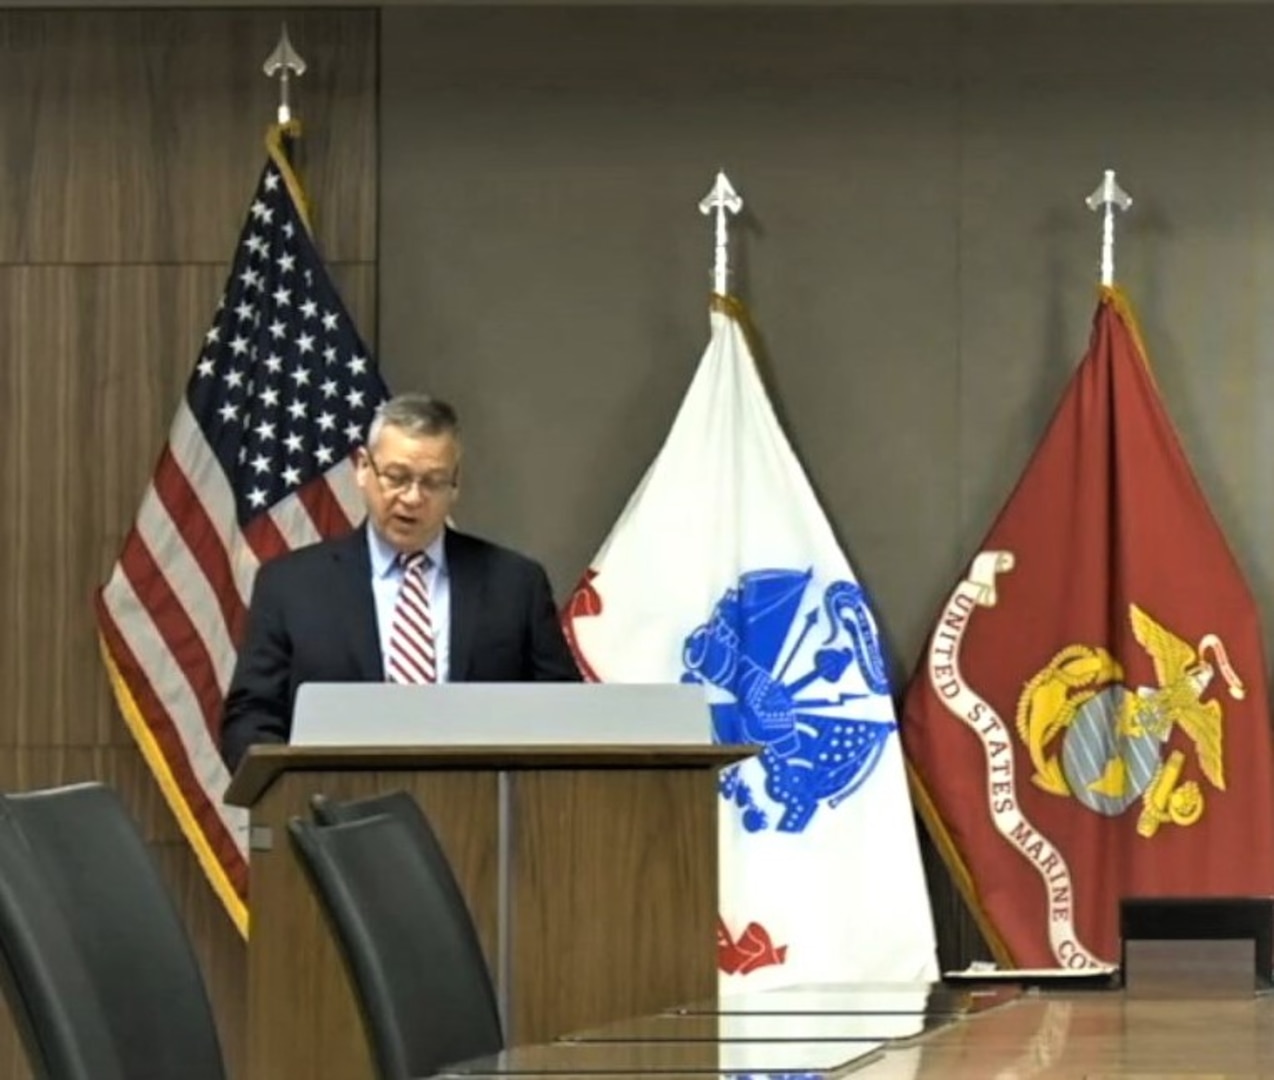 Man speaks at podium